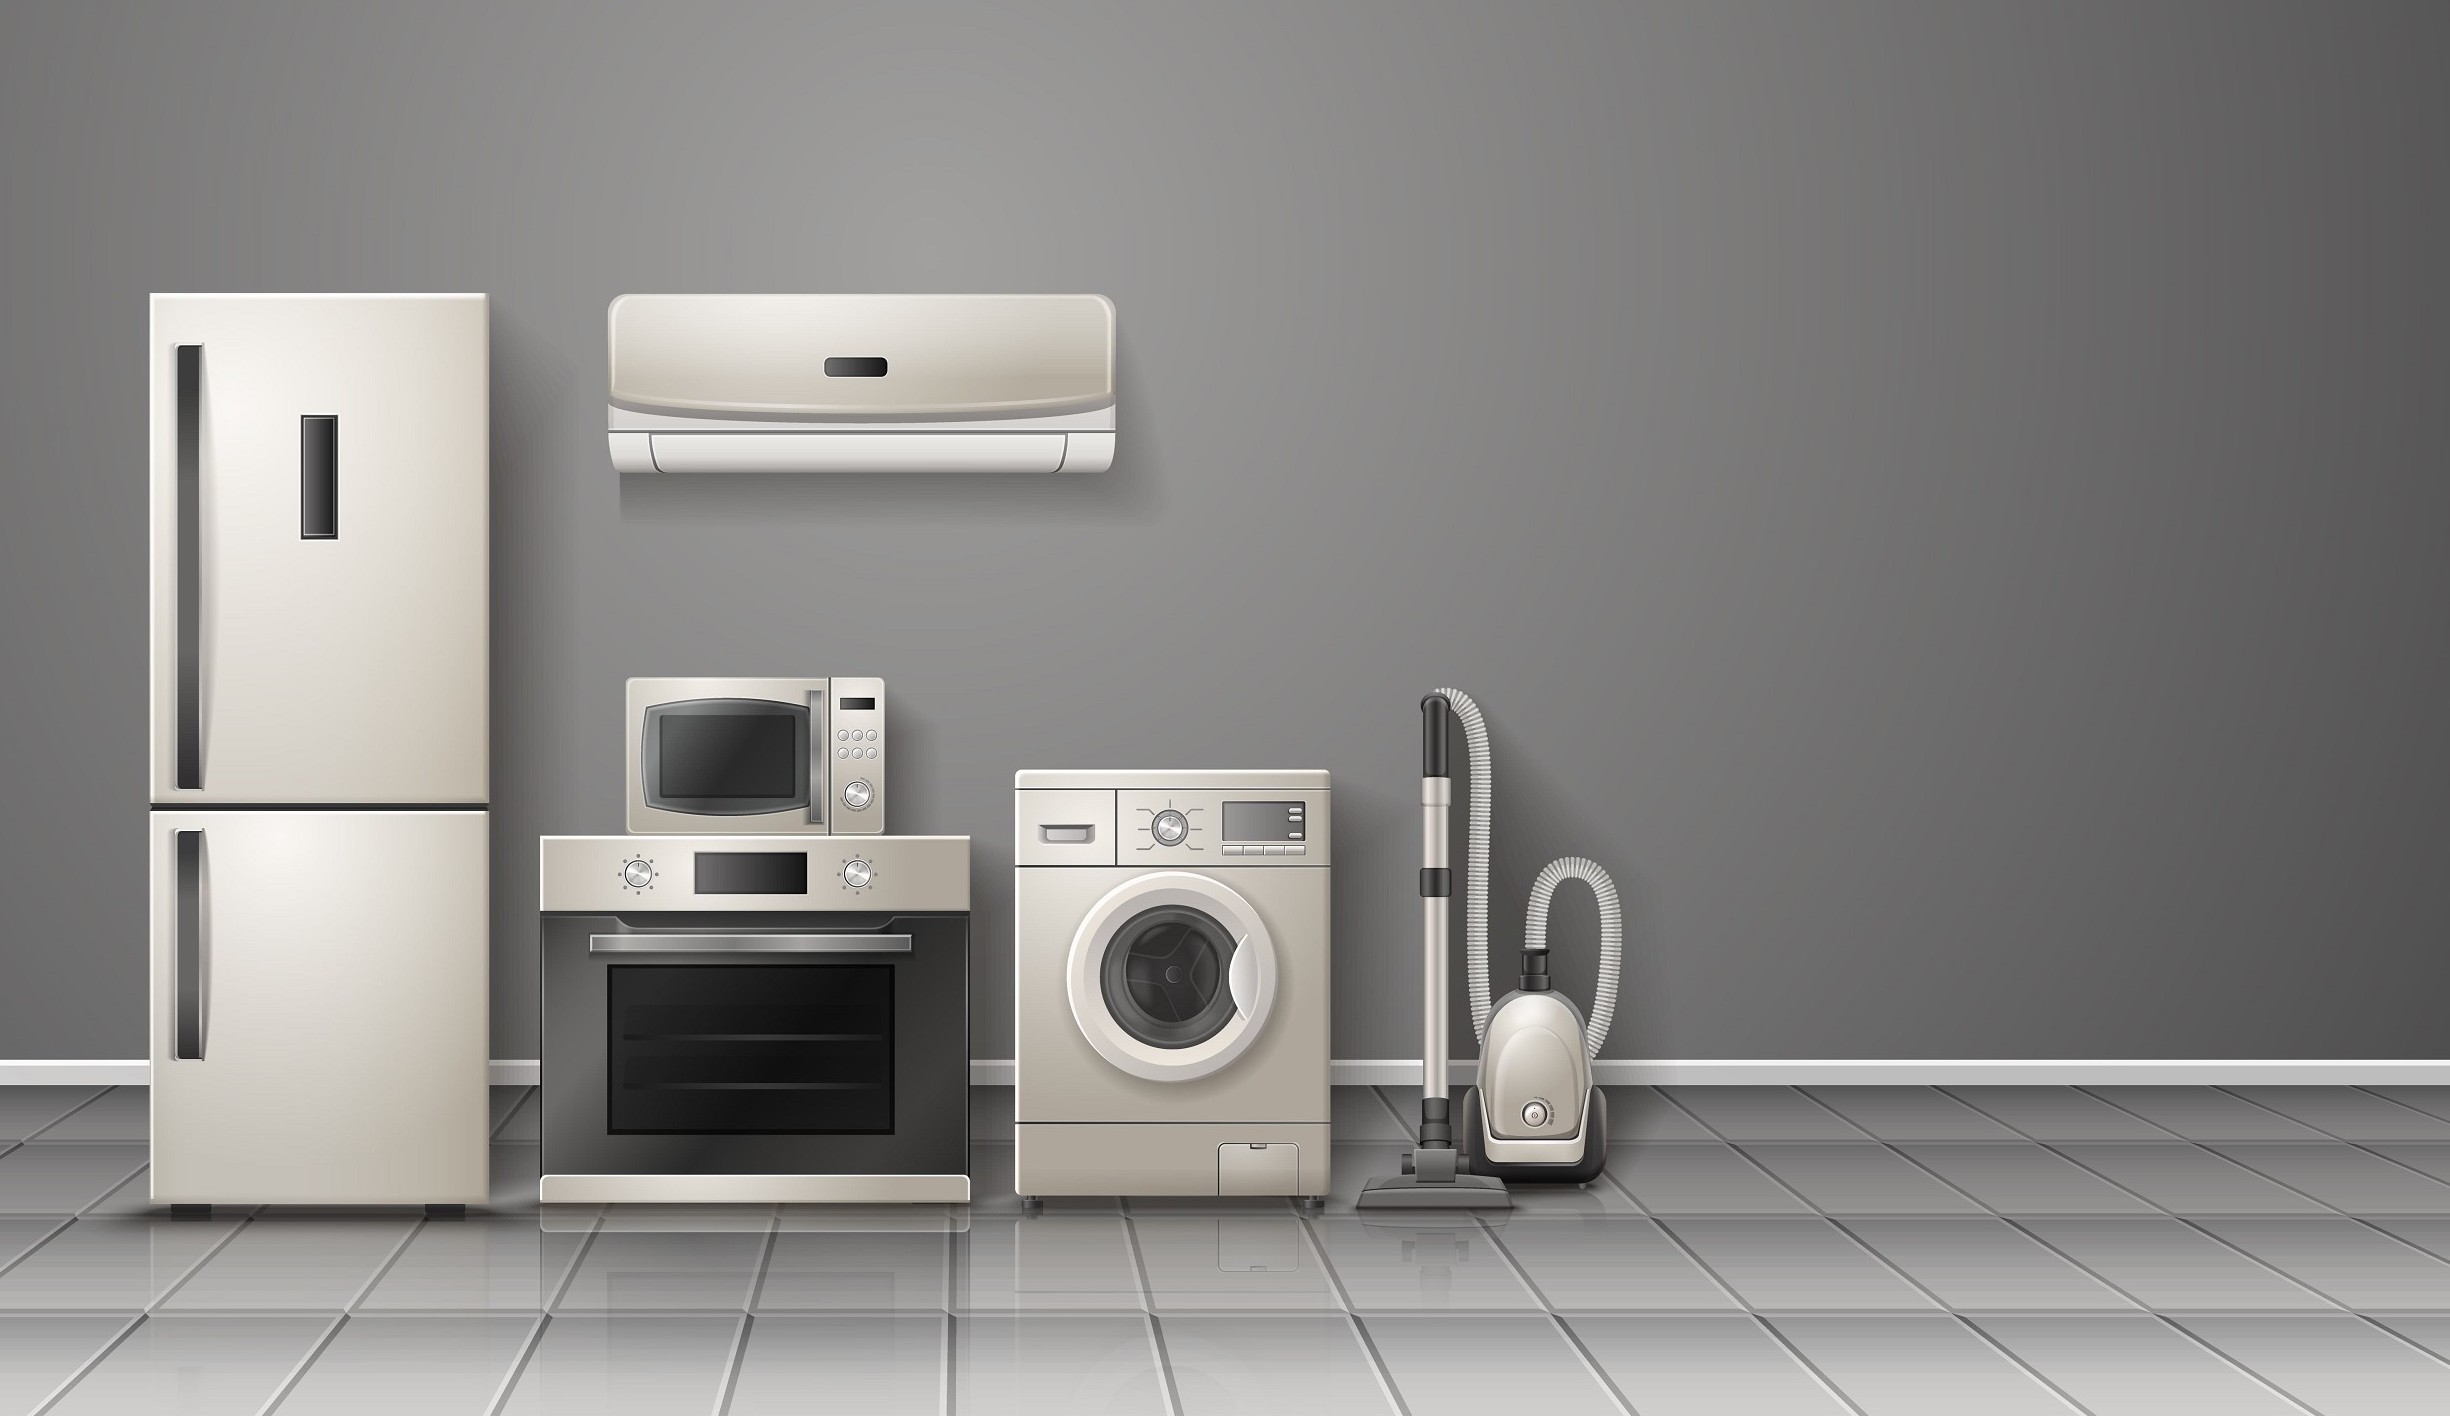 Los electrodomésticos (no solo aires acondicionados) que más impacto tendrán en tu factura este verano son las soluciones